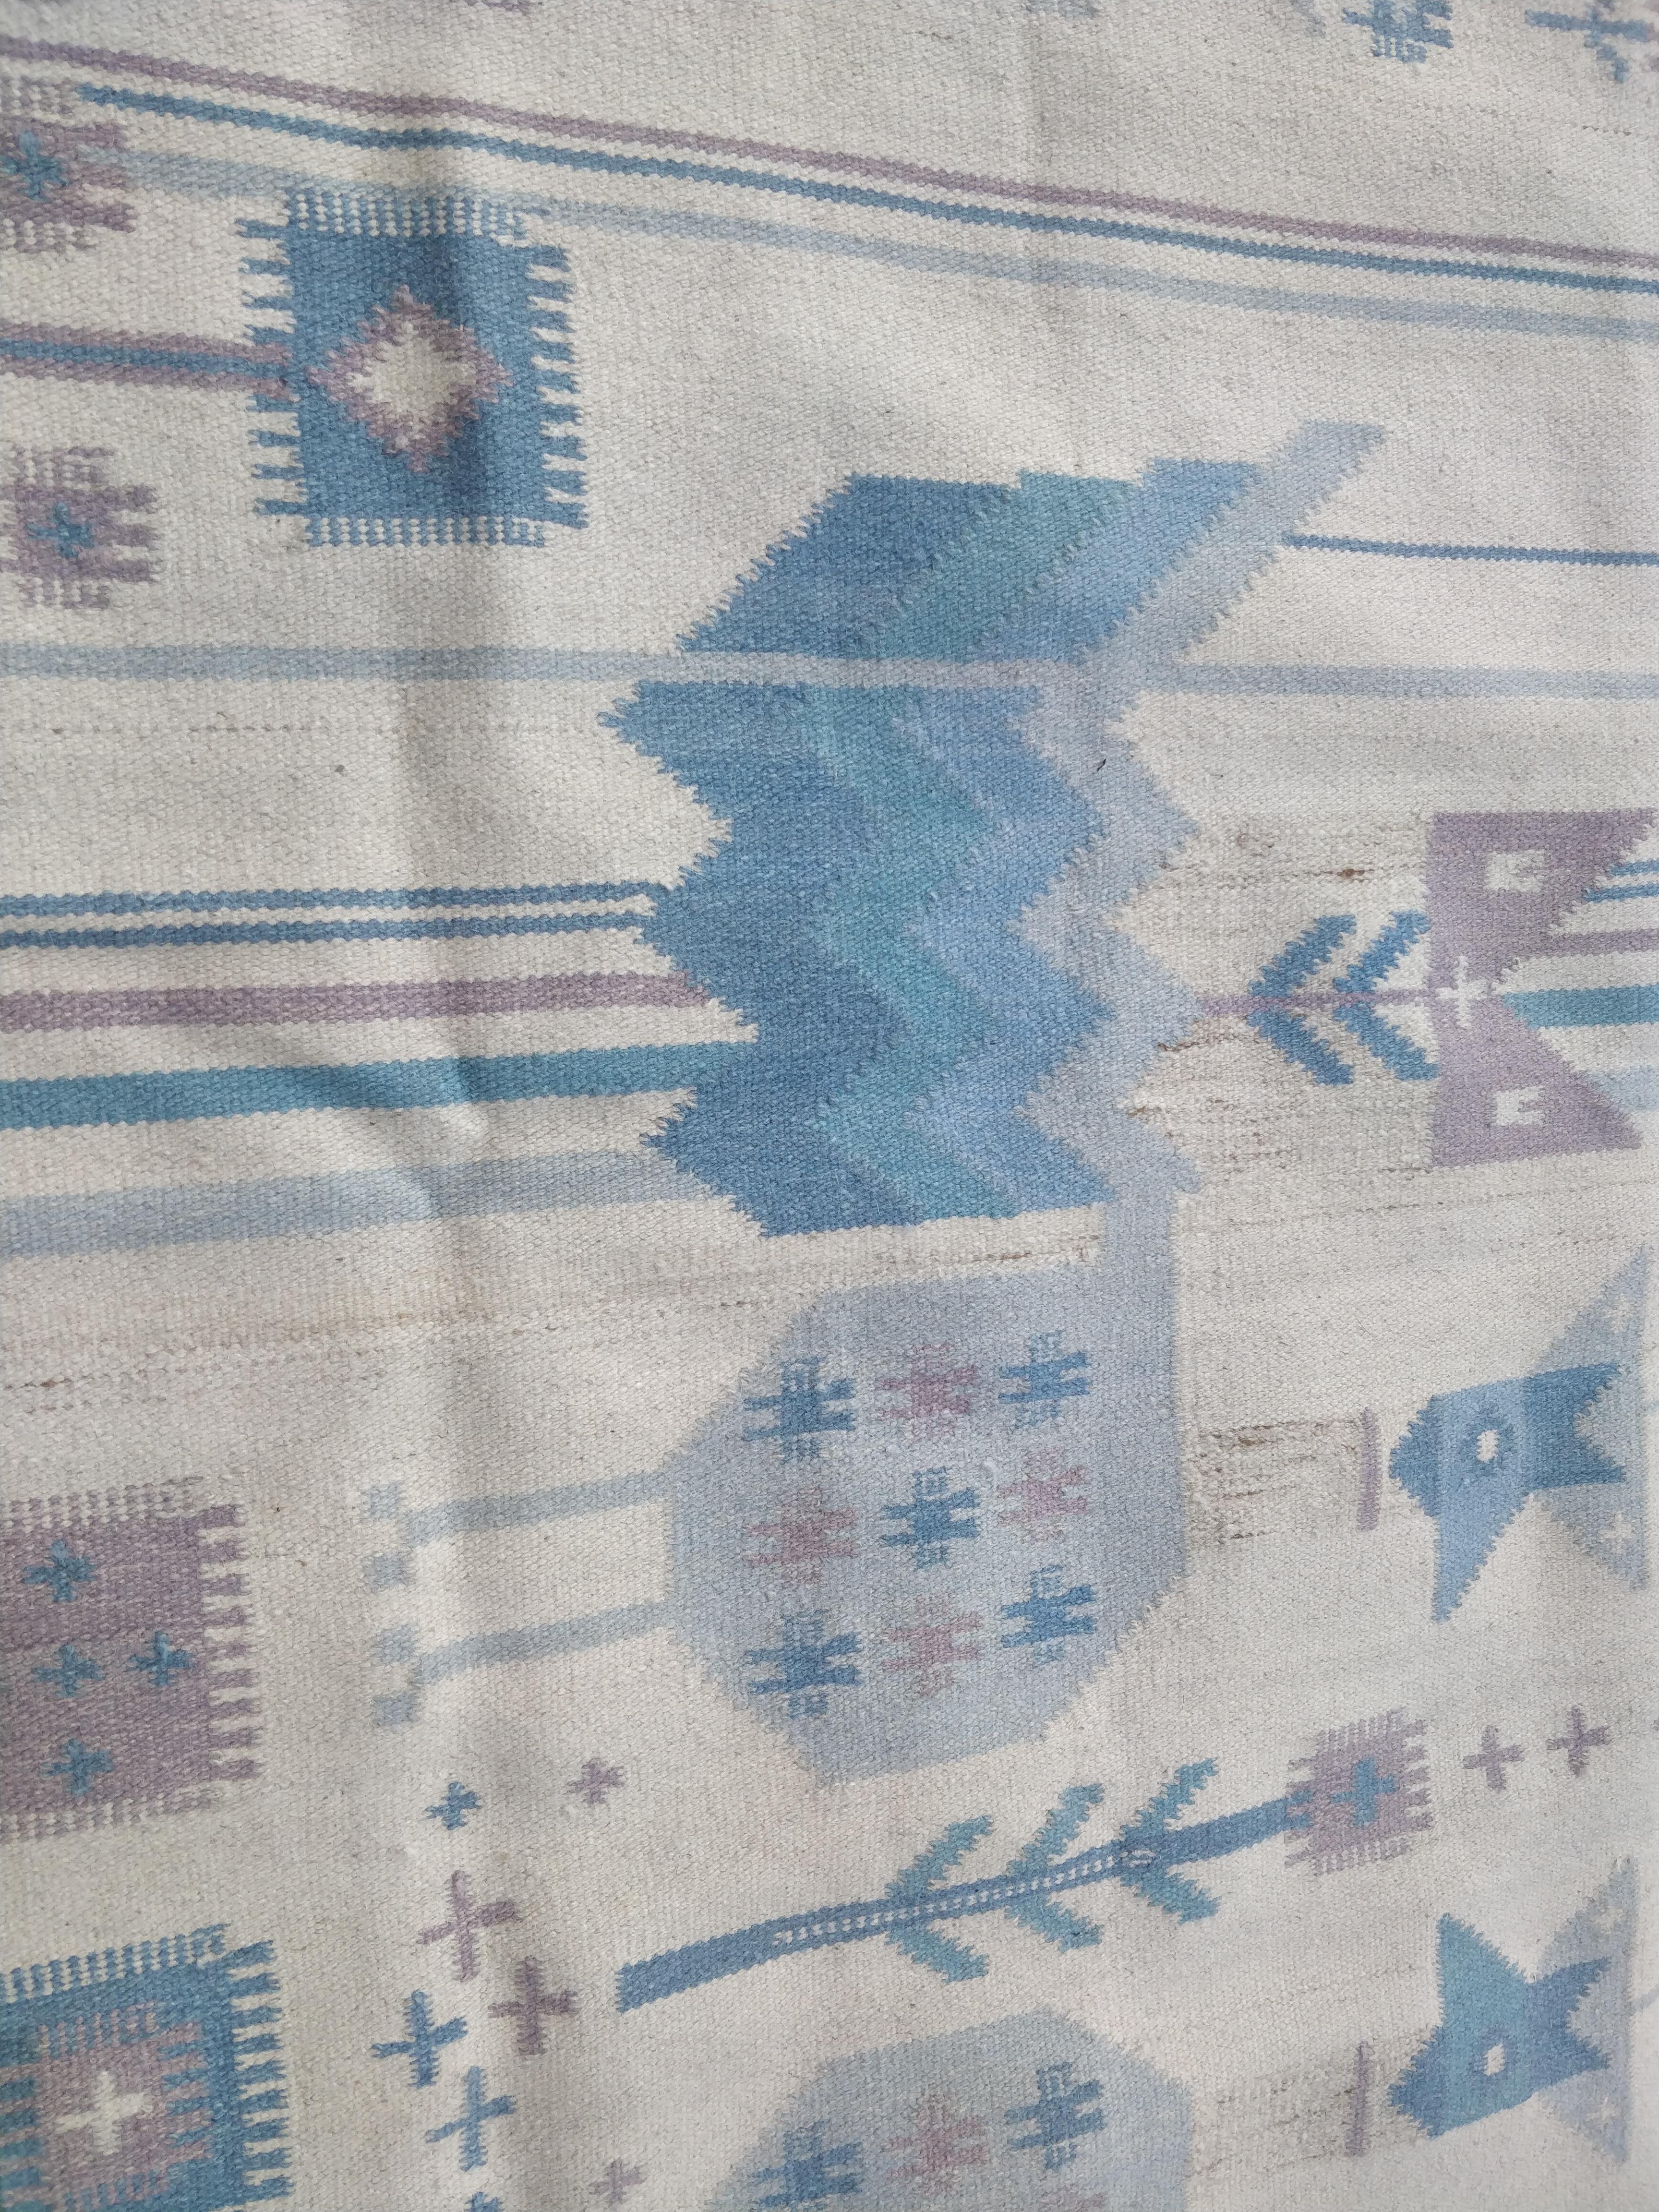 Cette tapisserie en laine présente un motif composé d'oiseaux stylisés et de fleurs dans des tons bleus. Dans le coin inférieur droit figurent les initiales du designer, NE (Németh Éva). Depuis les années 1970.

Éva Németh (1930-2019) était une